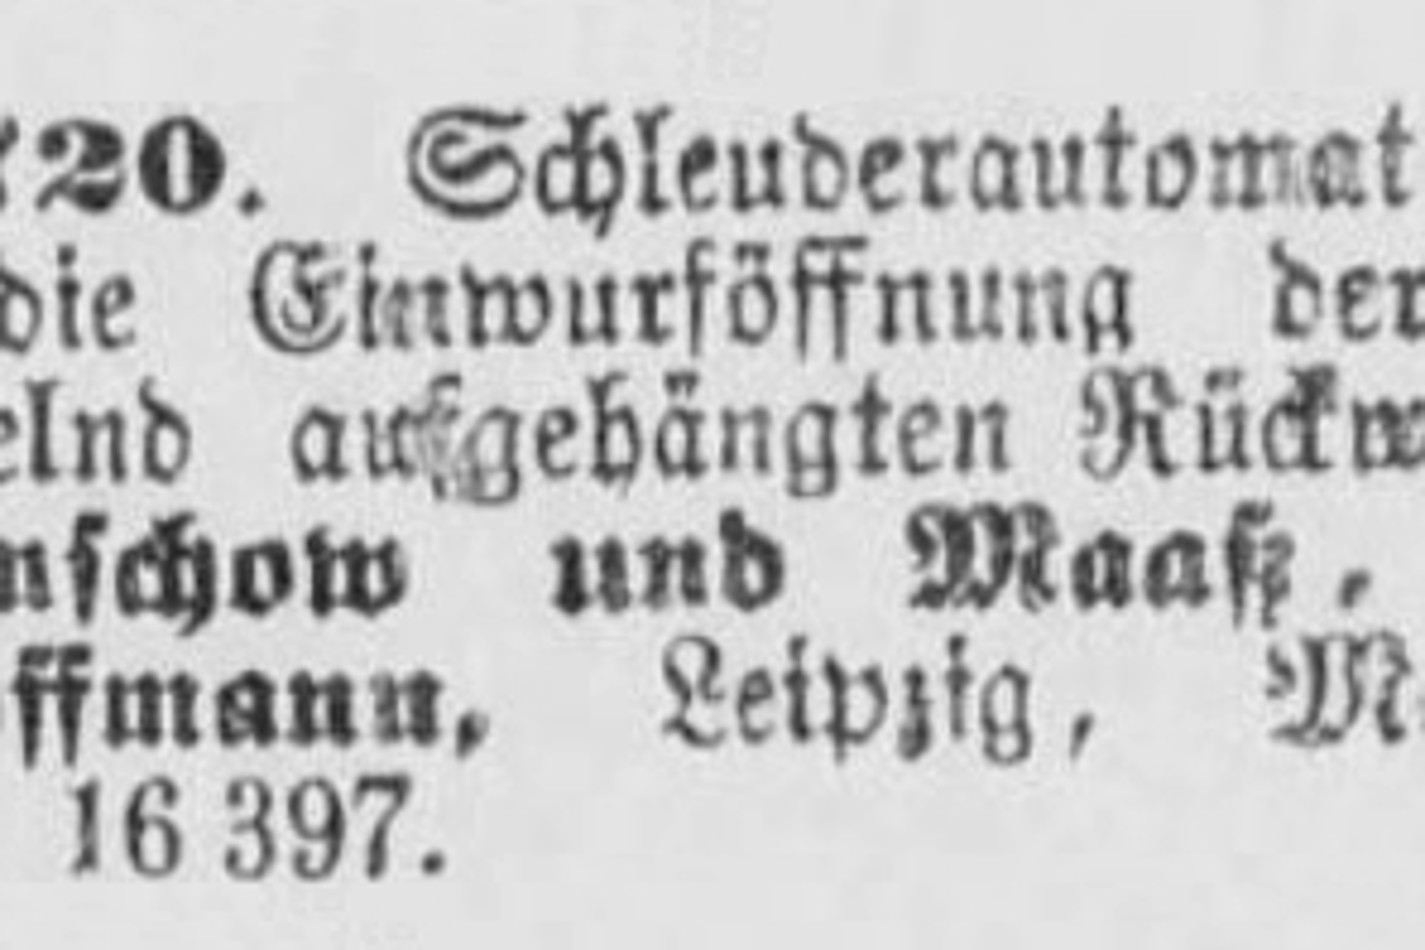 DRGM294720_Ganschow und Maaß Berlin Reinhard Hoffmann Leipzig_06.11.1906_Deutscher Reichsanzeiger